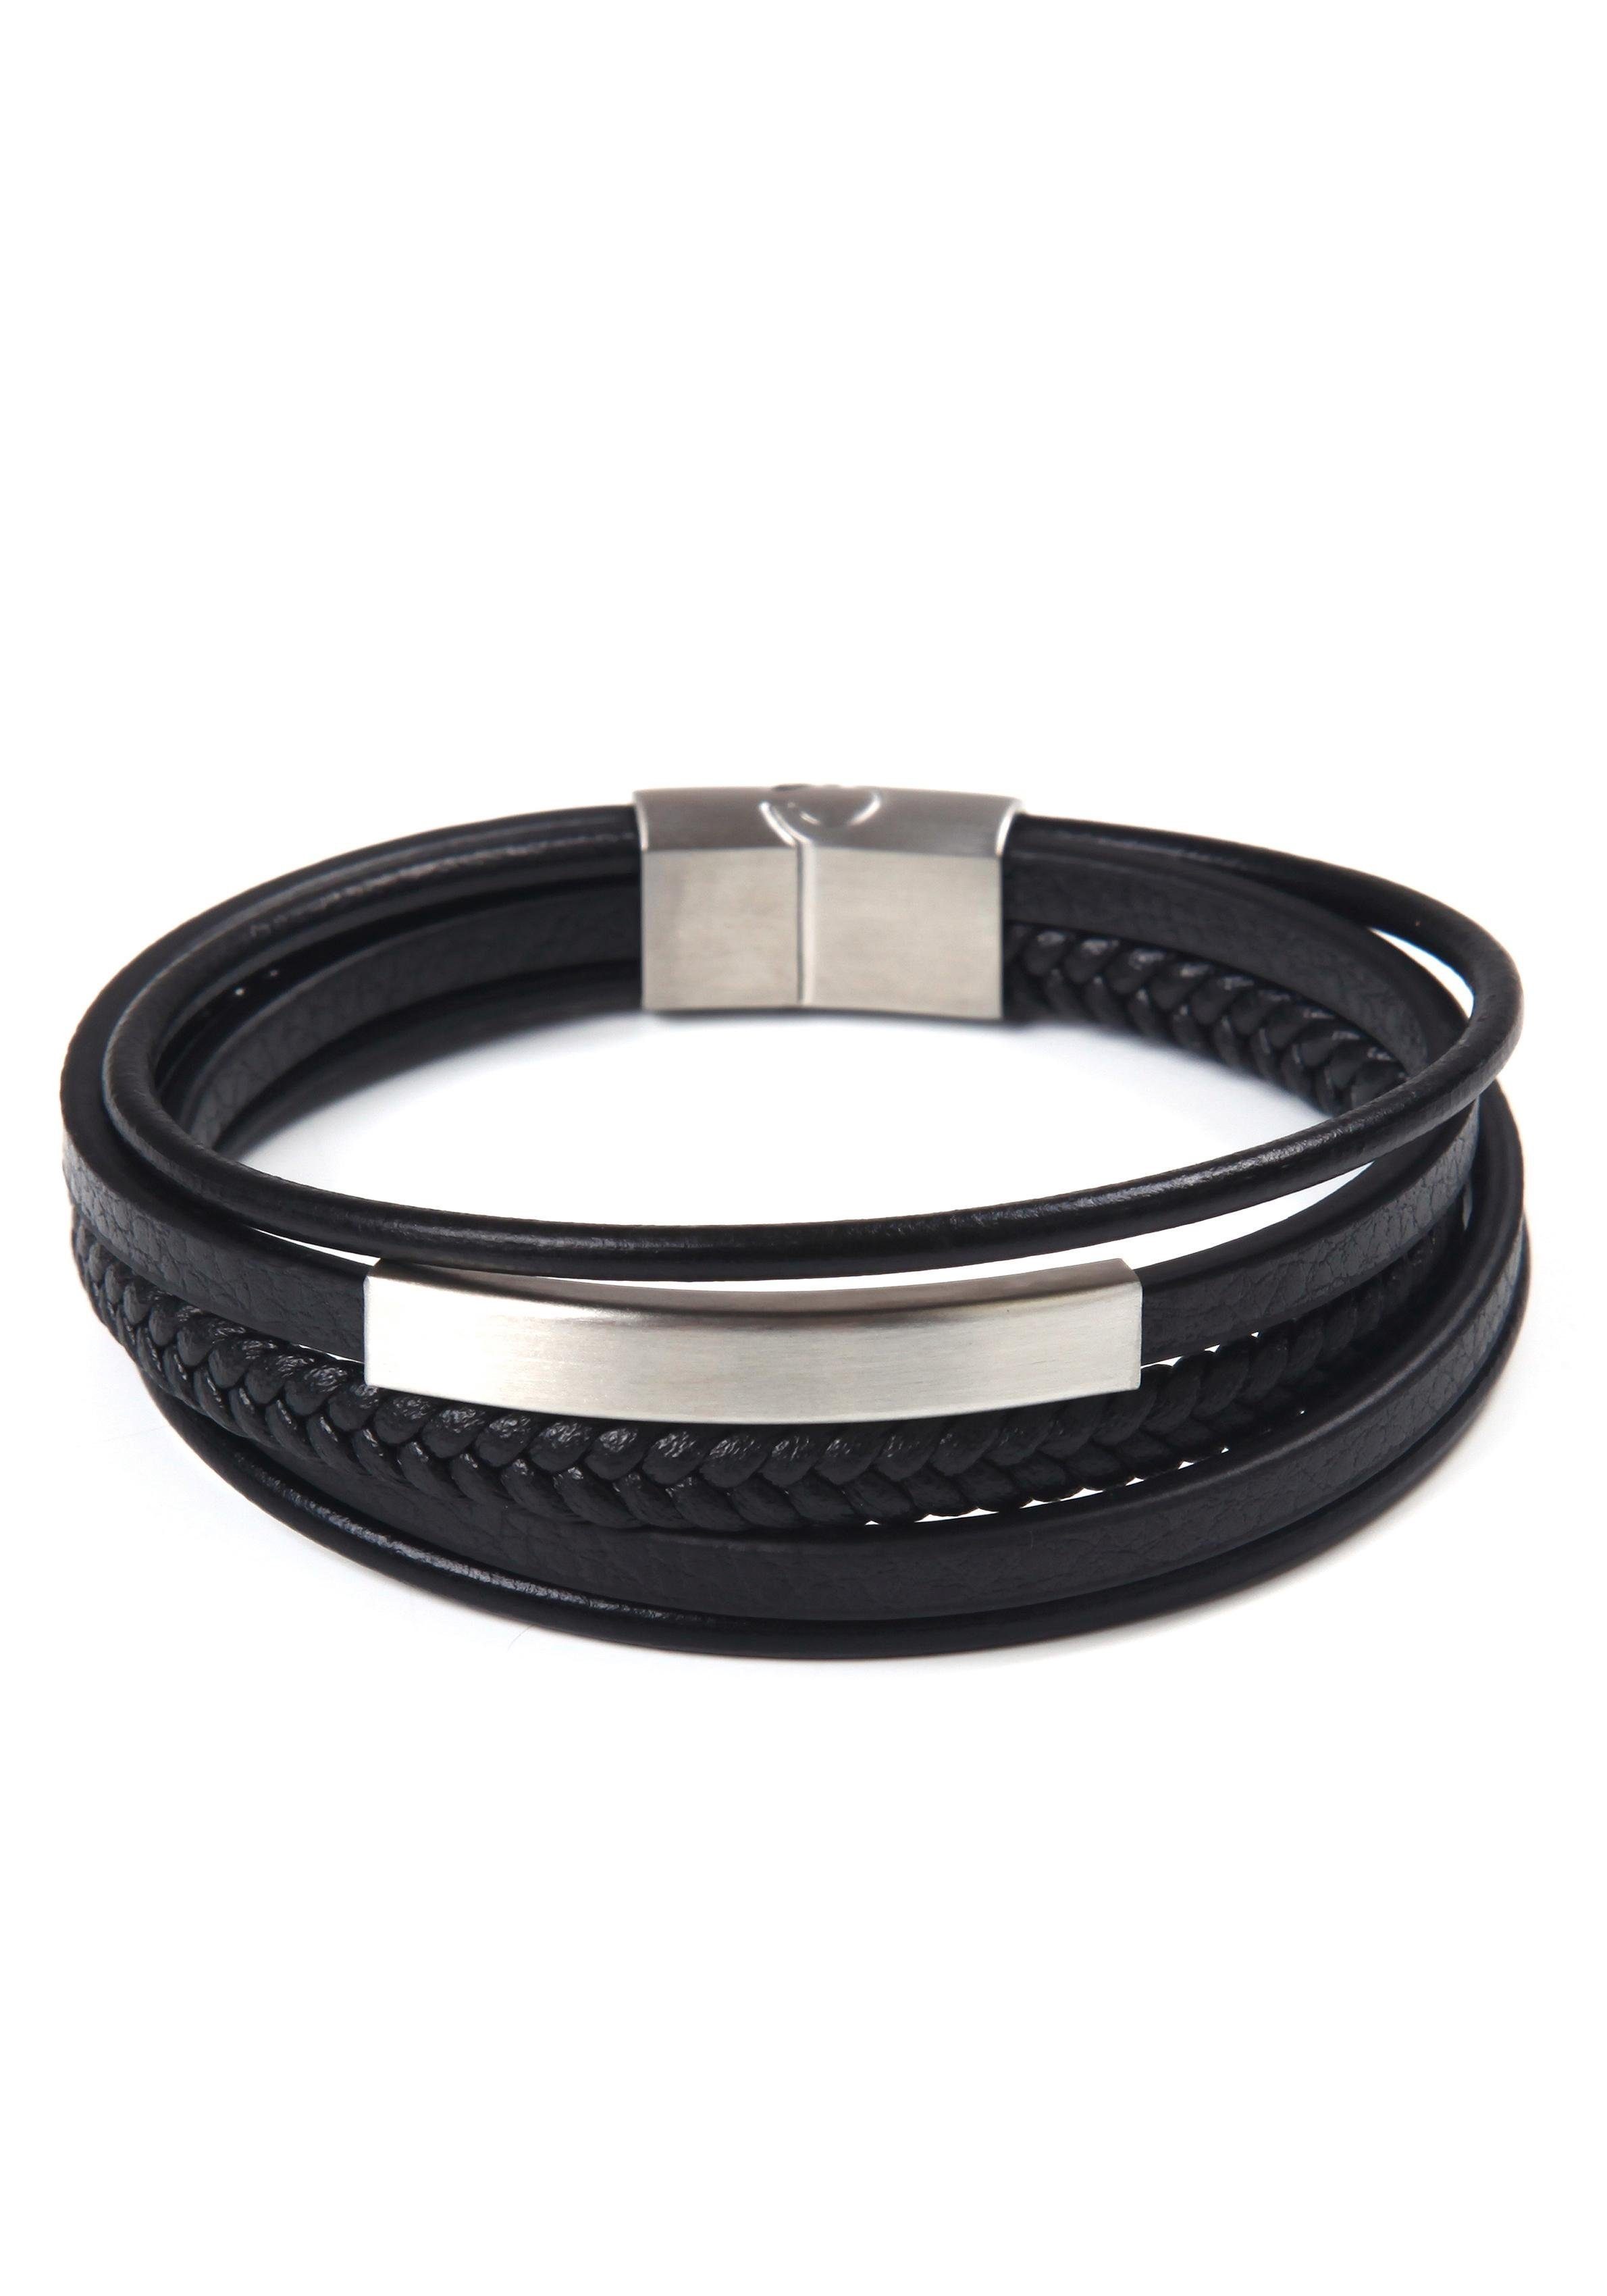 Firetti Armband stylisches Design im sportlich-eleganten Stil, mehrreihig edelstahlfarben-schwarz | Edelstahlarmbänder